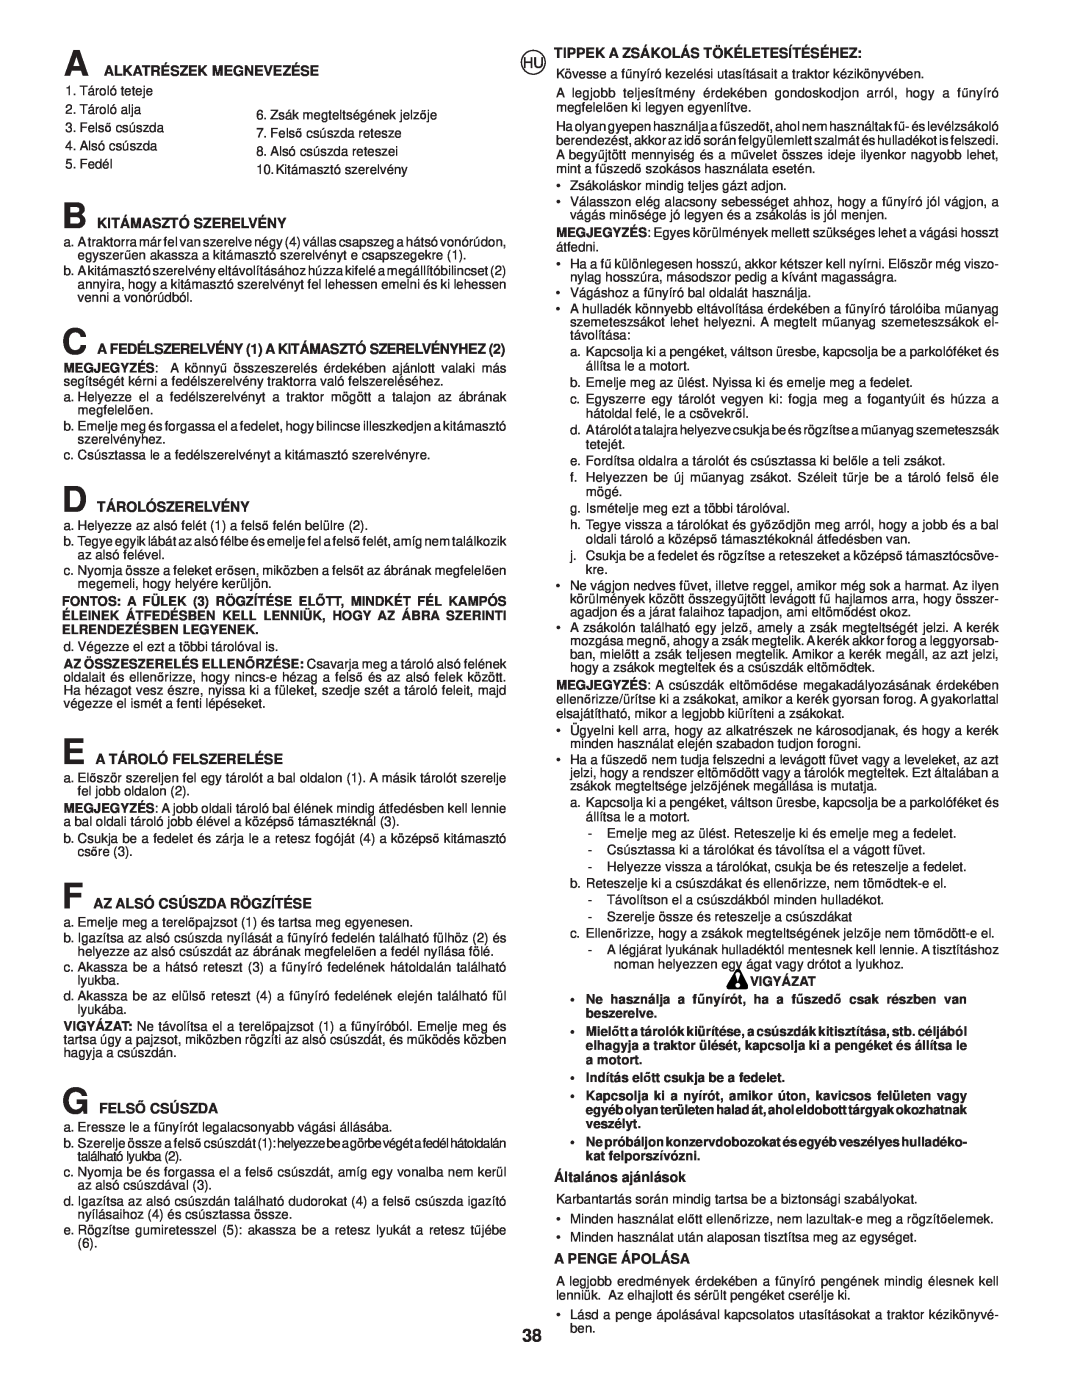 McCulloch CET42 manual A Alkatrészek Megnevezése, B Kitámasztó Szerelvény, D Tárolószerelvény, E A Tároló Felszerelése 